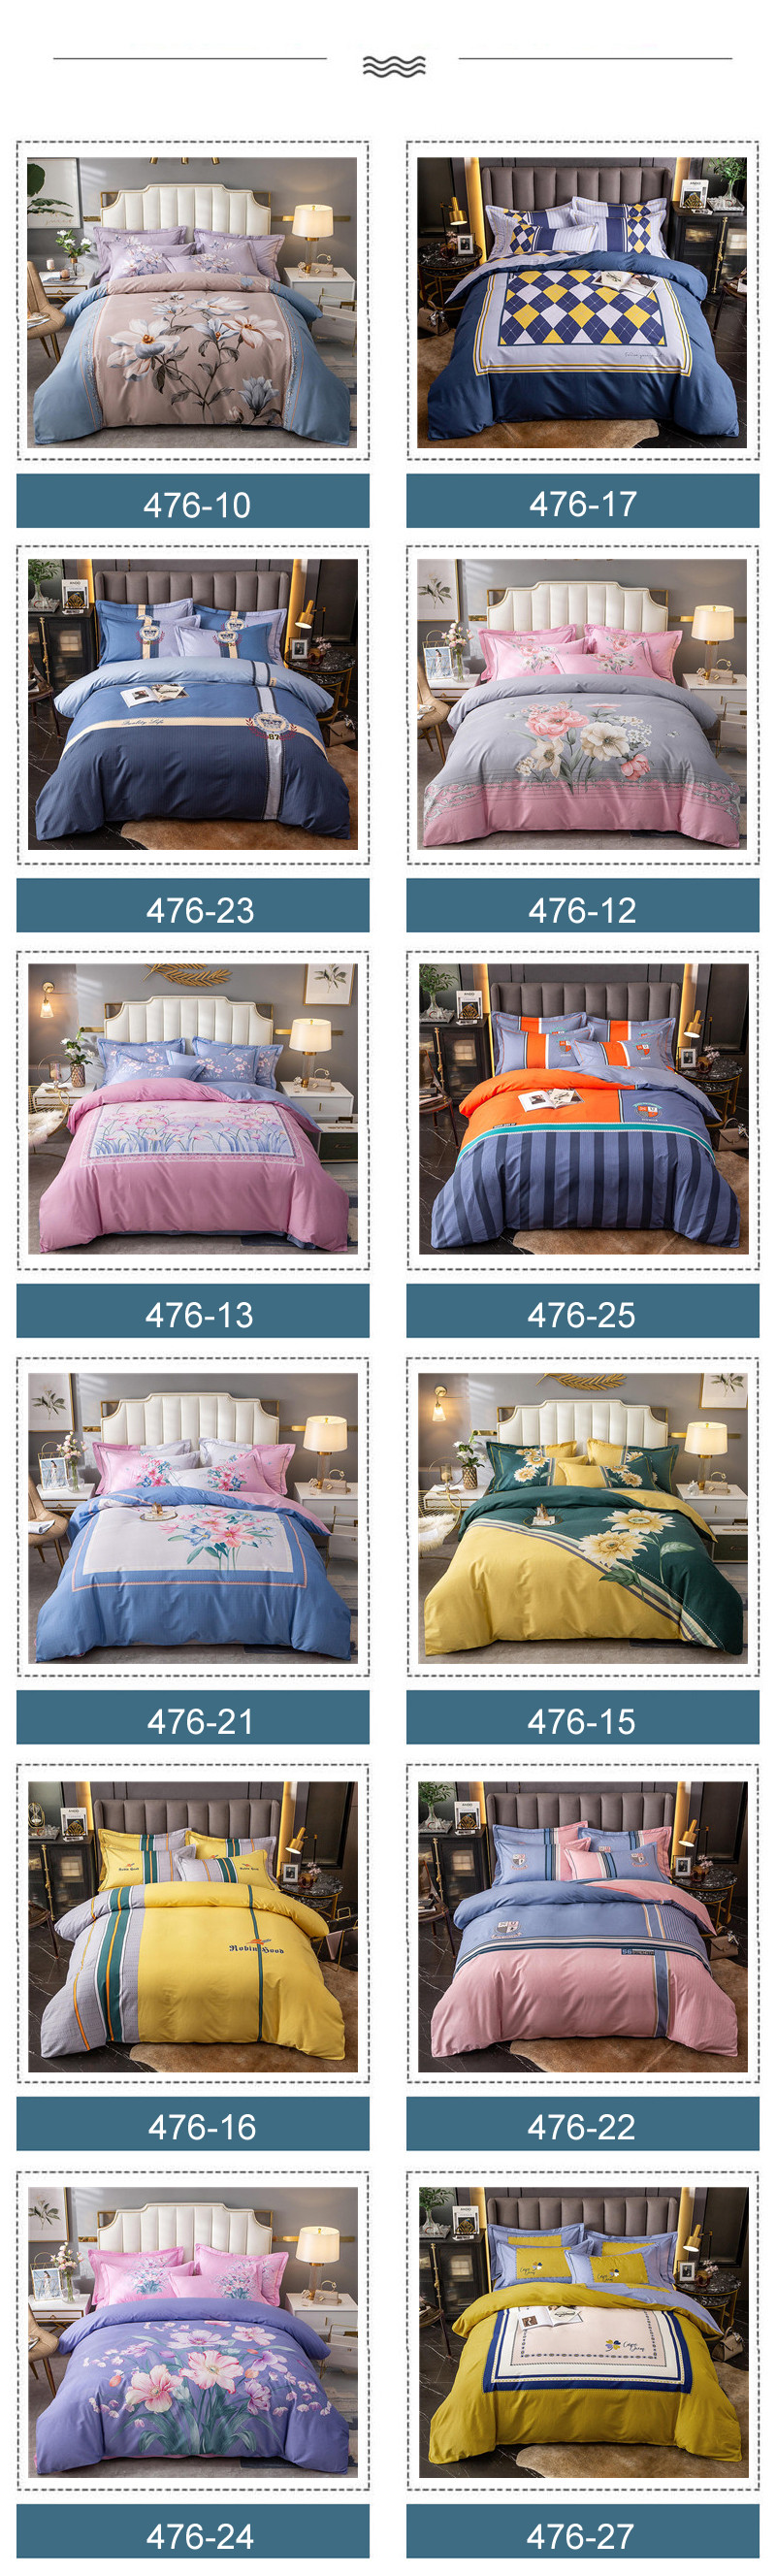 Online Shopping Bed Linen Queen